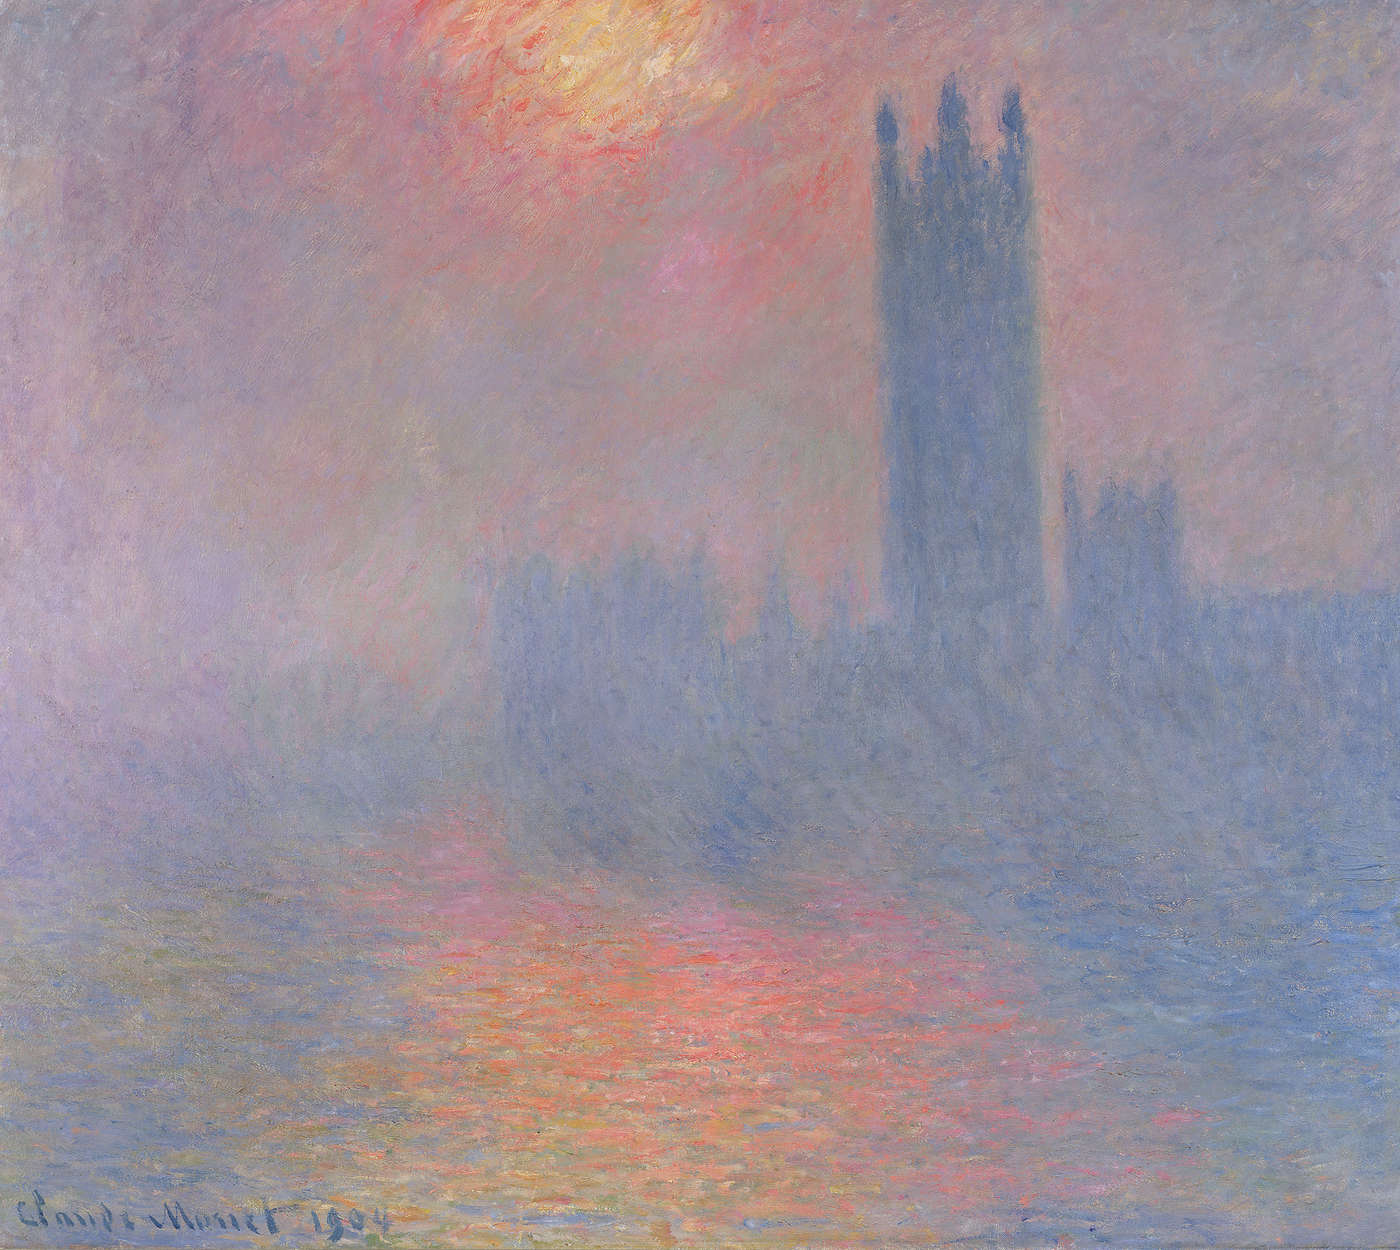             Papier peint "Le Parlement de Londres avec le soleil qui perce la brume" de Claude Monet
        